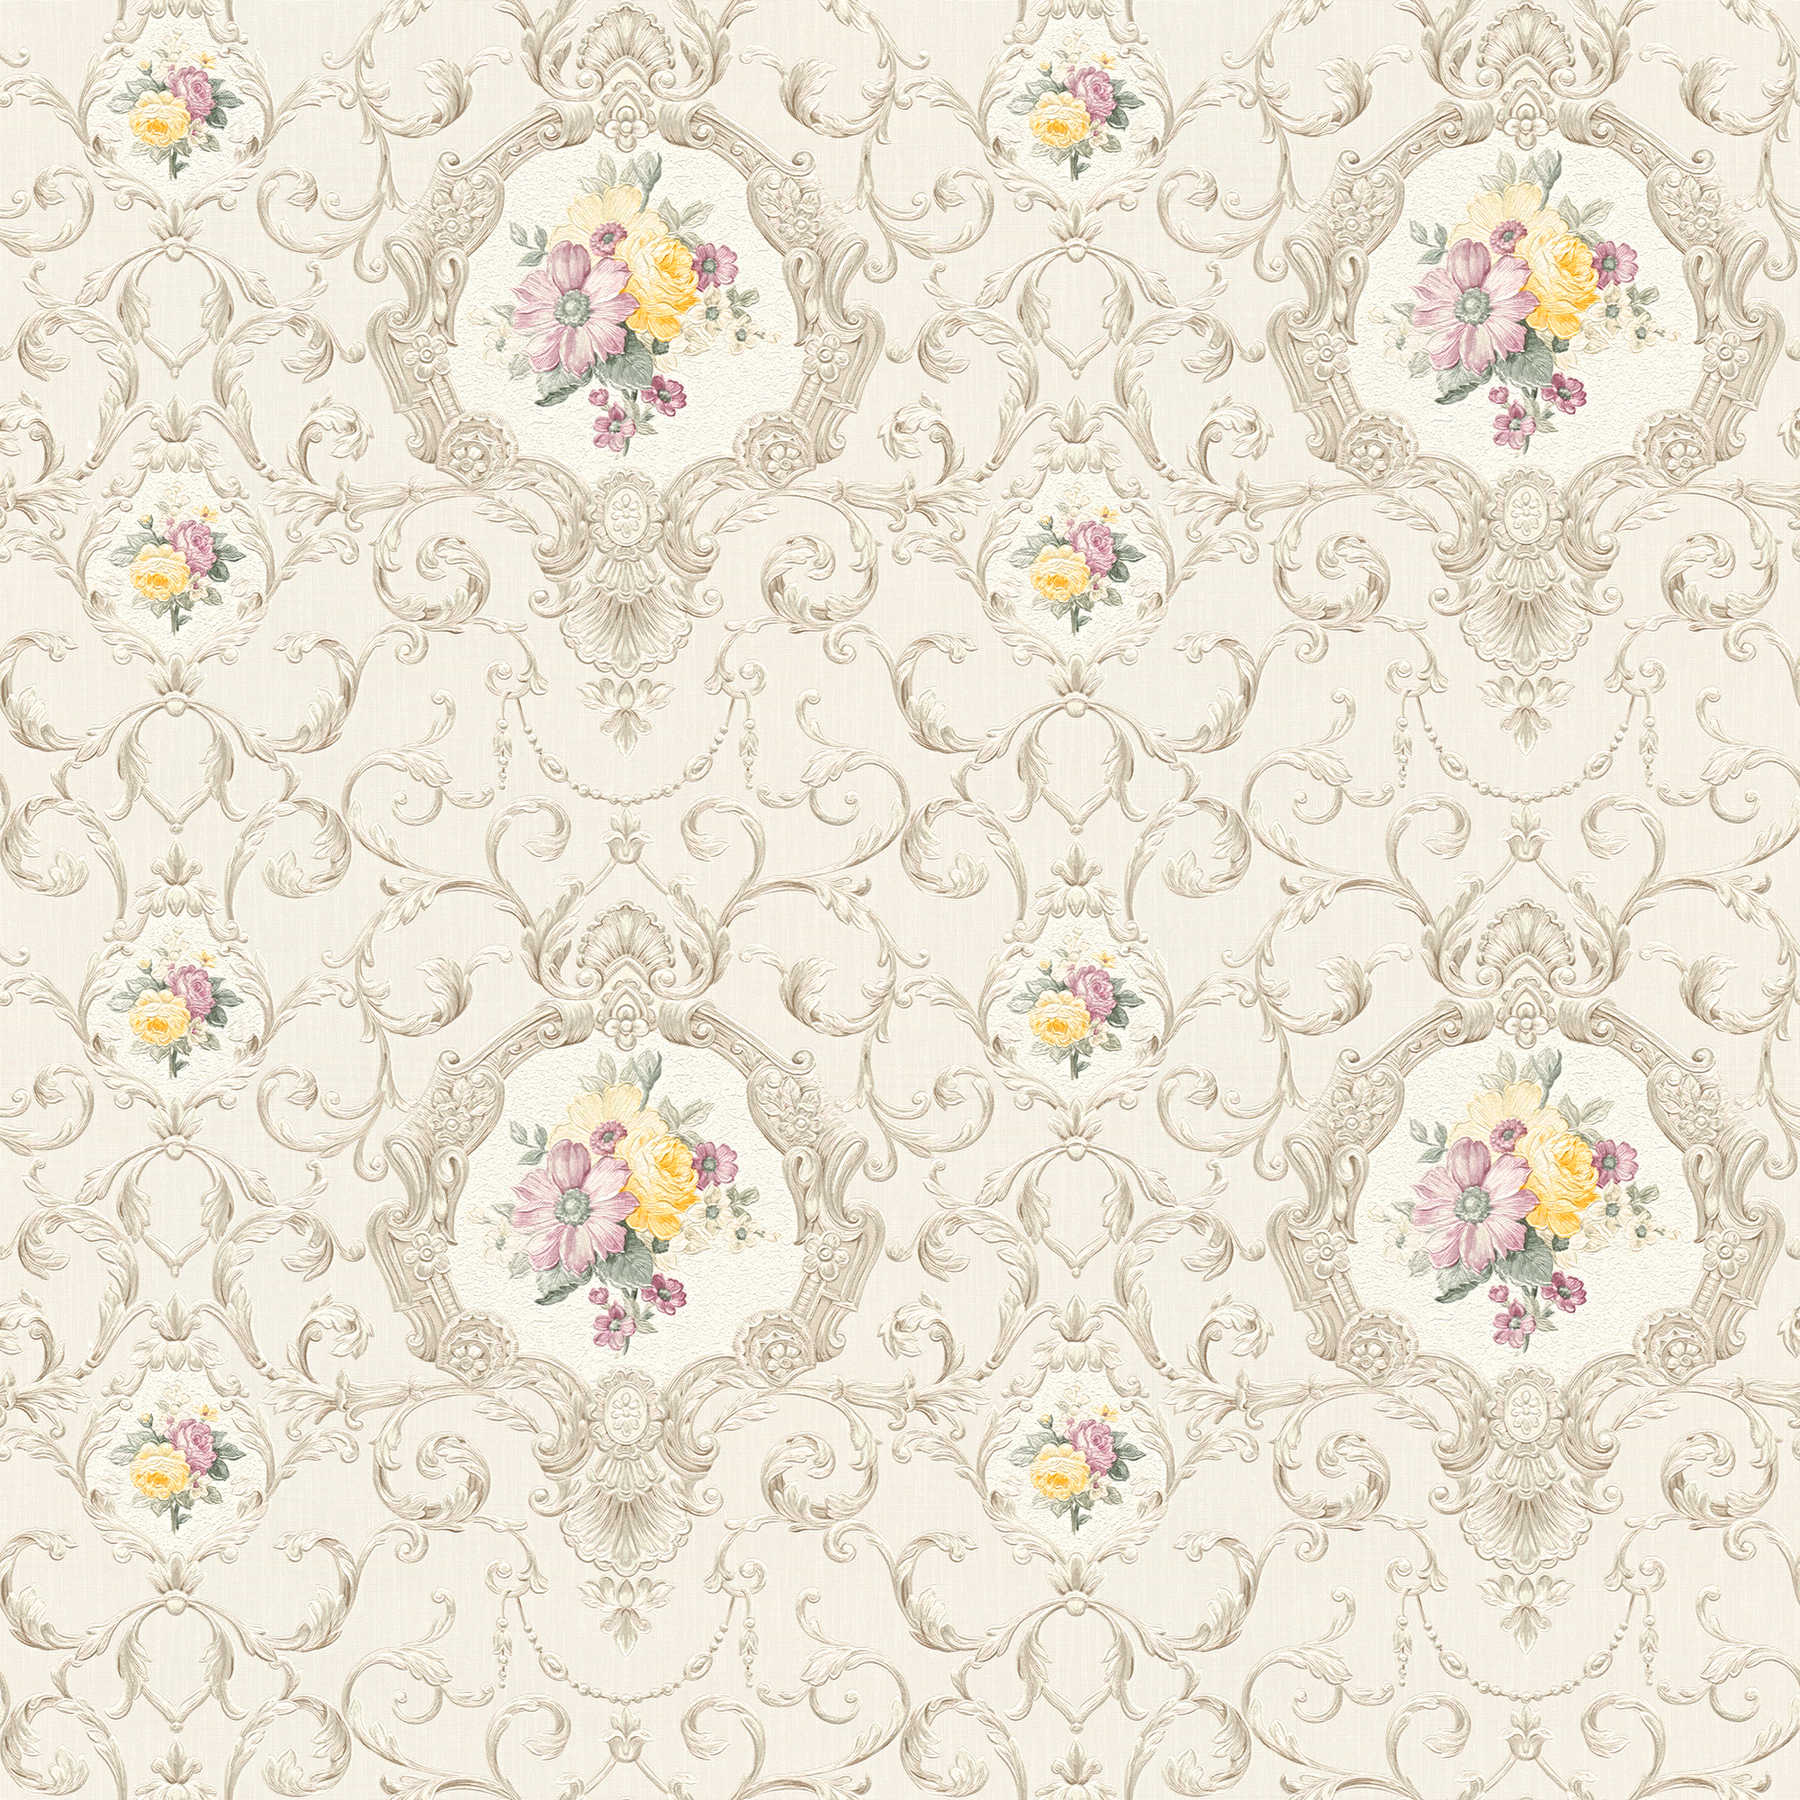         behang neo-barok bloemen ornament patroon - veelkleurig, crème
    